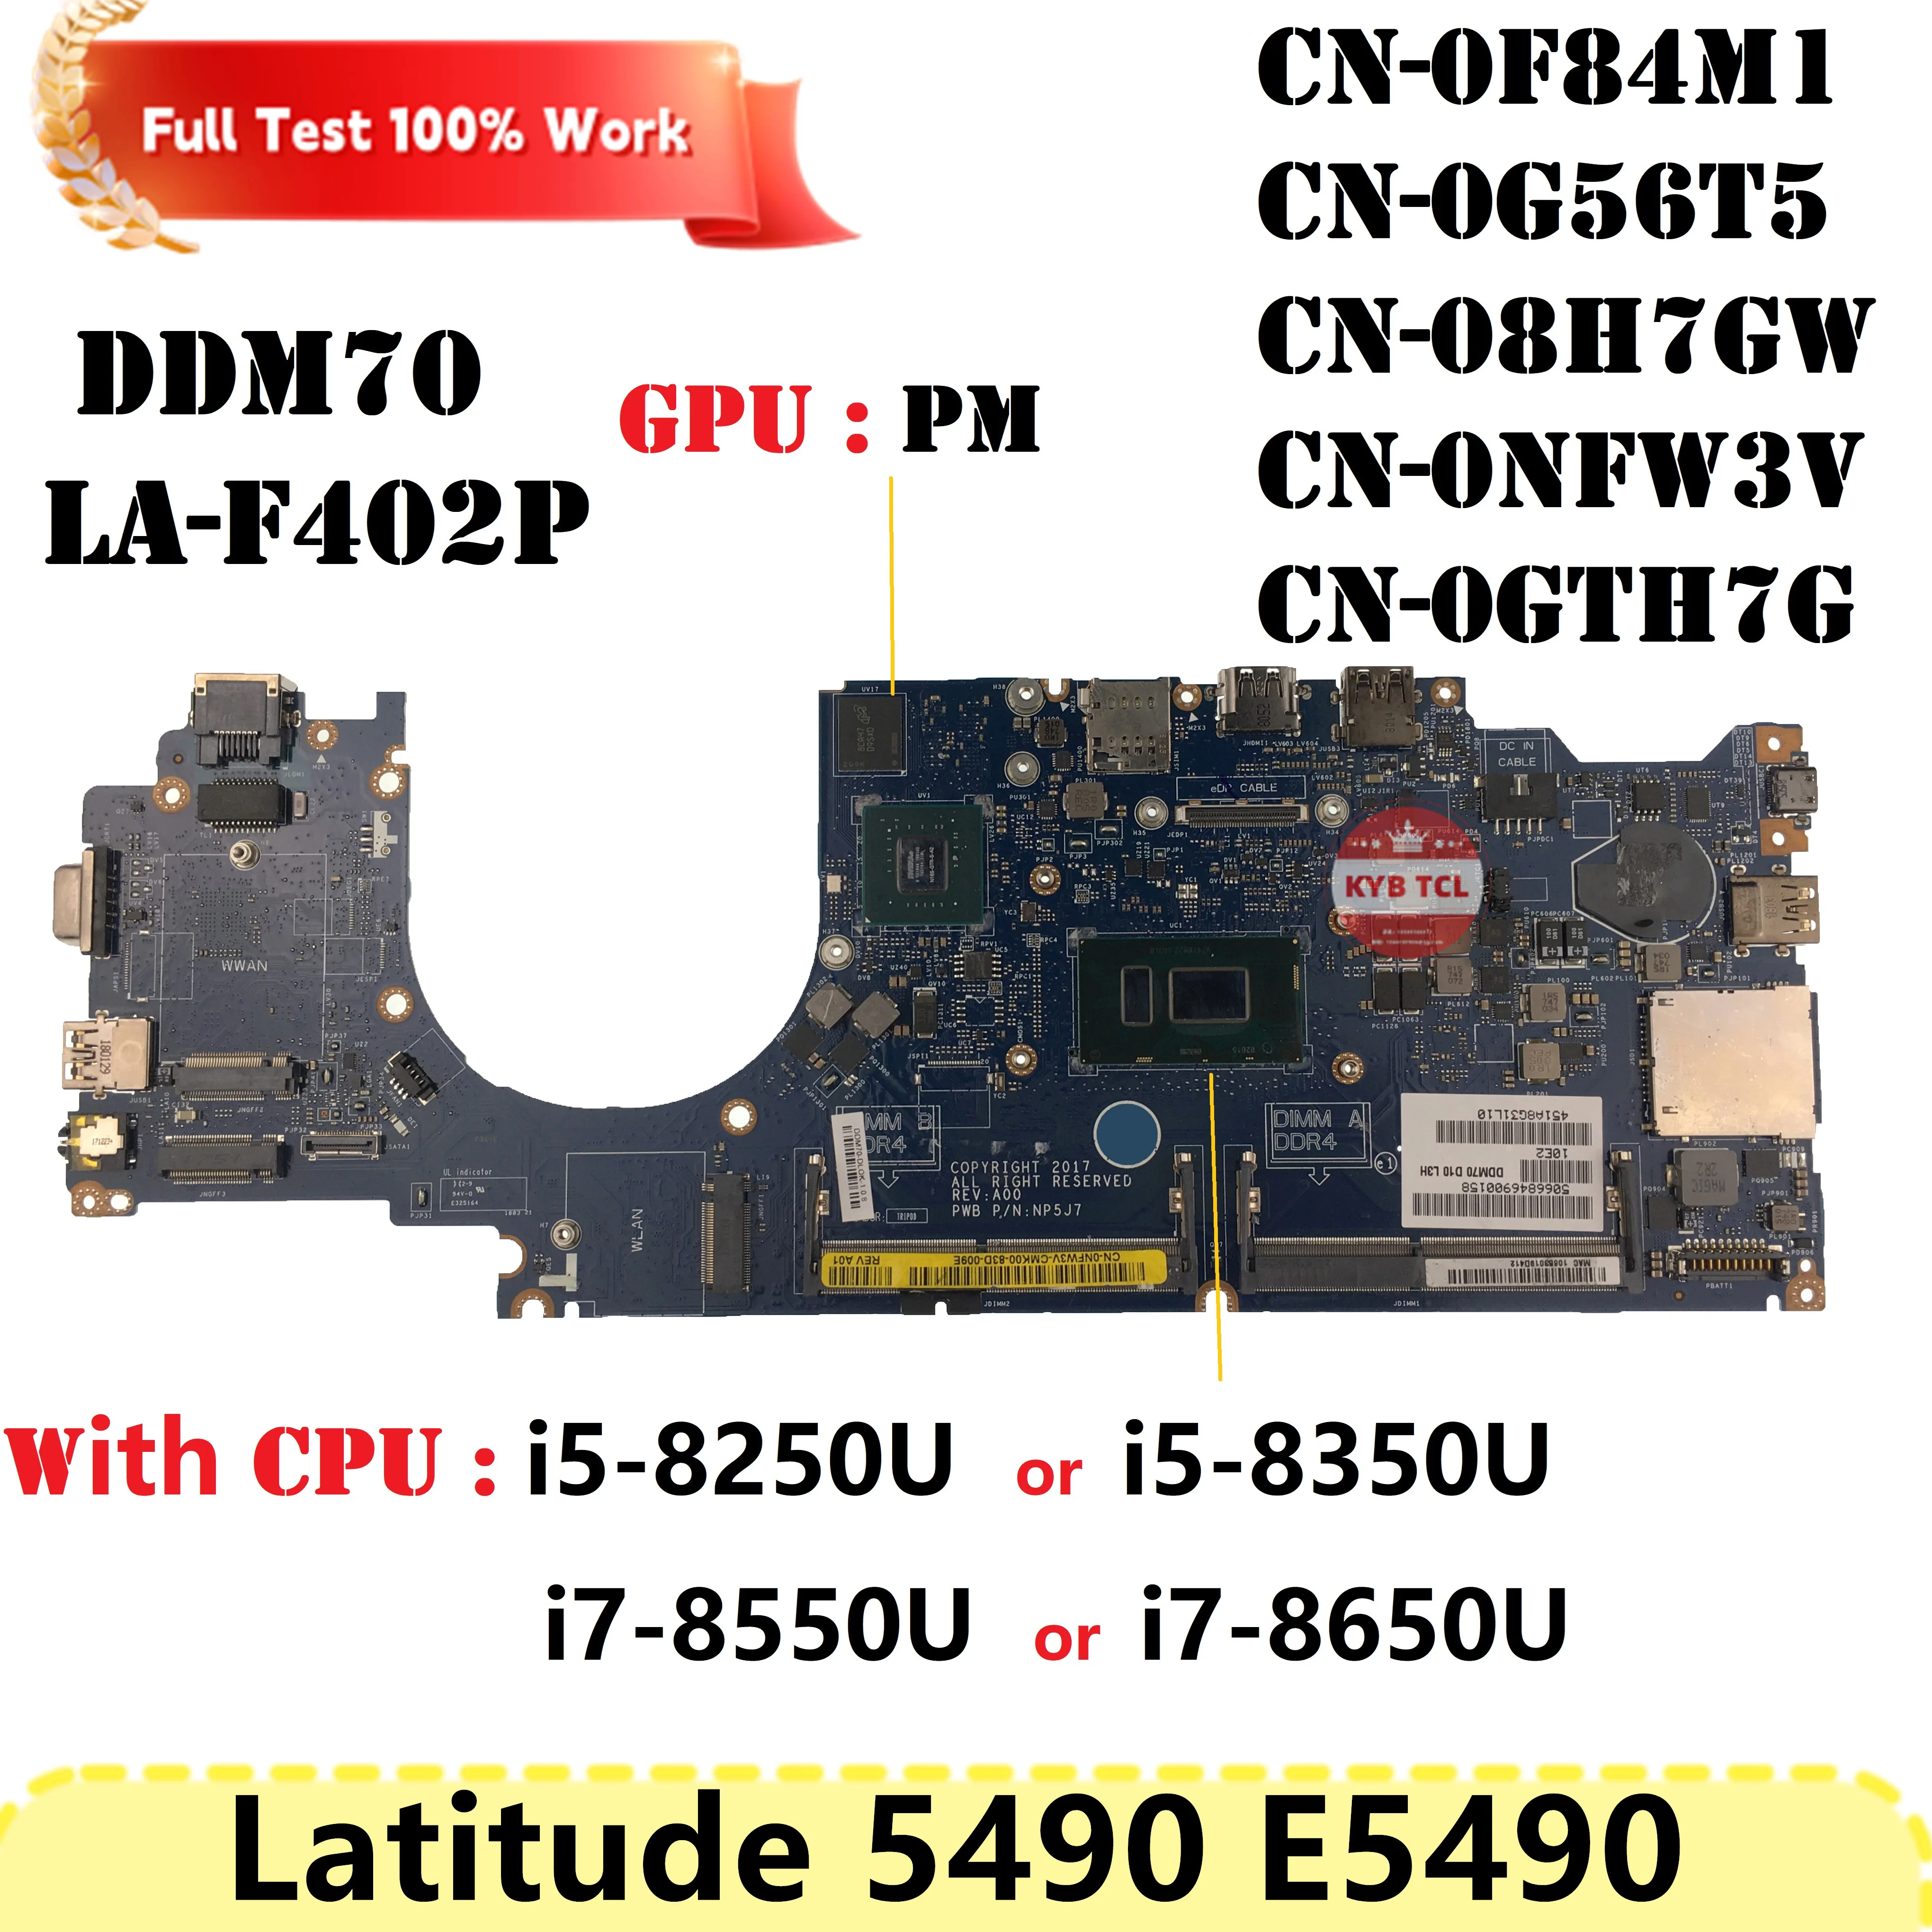 

DDM70 LA-F402P Материнская плата Dell Latitude E5490 5490 Материнская плата ноутбука CN-07DWXK 0HP2D6 0NFW3V 0MDR96 0G56T5 07DWXK Ноутбук